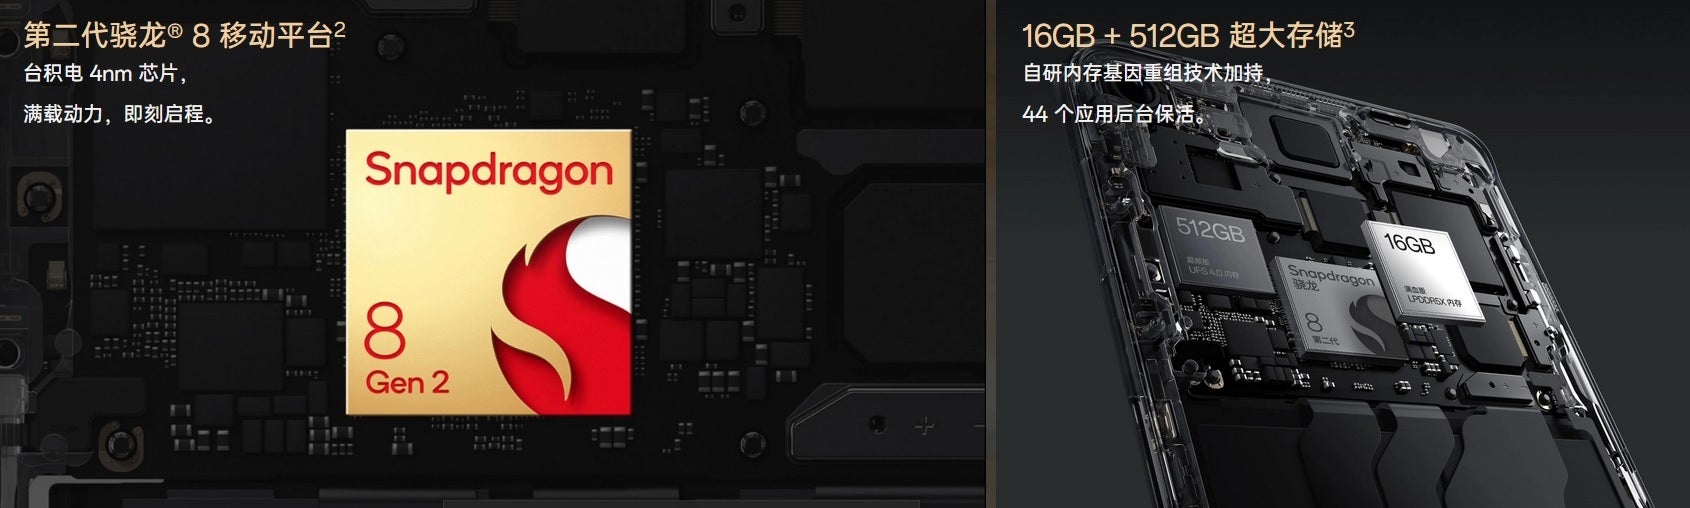 L'édition limitée OnePlus 11 Jupiter Rock est alimentée par le SoC Snapdragon 8 Gen 2 - L'édition limitée OnePlus 11 Jupiter Rock est désormais officielle